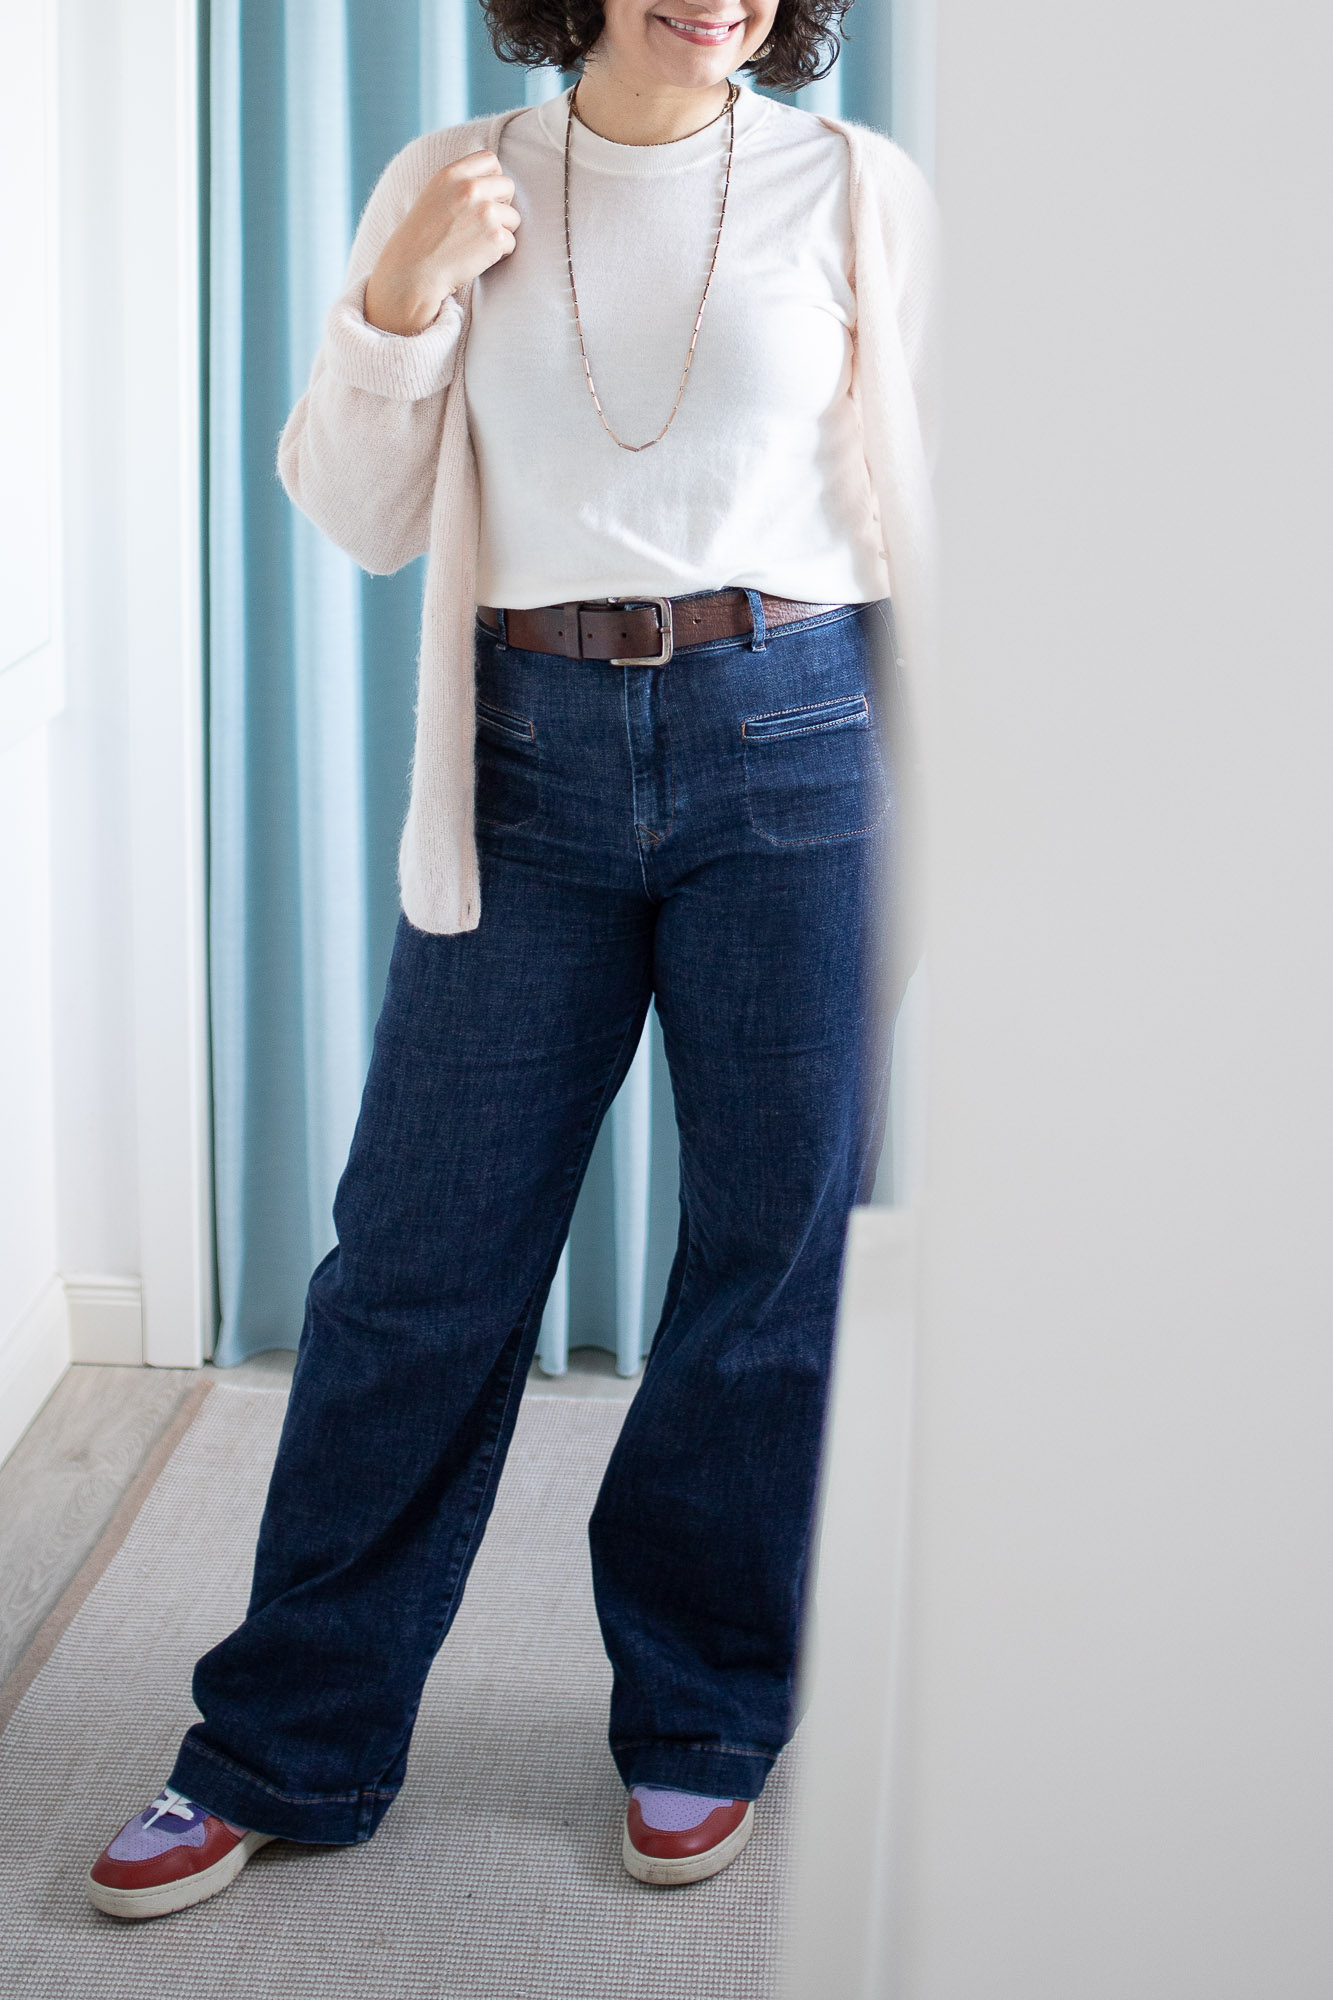 Flared Jeans Outfits - Die DEW Flared Jeans von Dawn Denim mit kuscheligem Cardigan gestylt